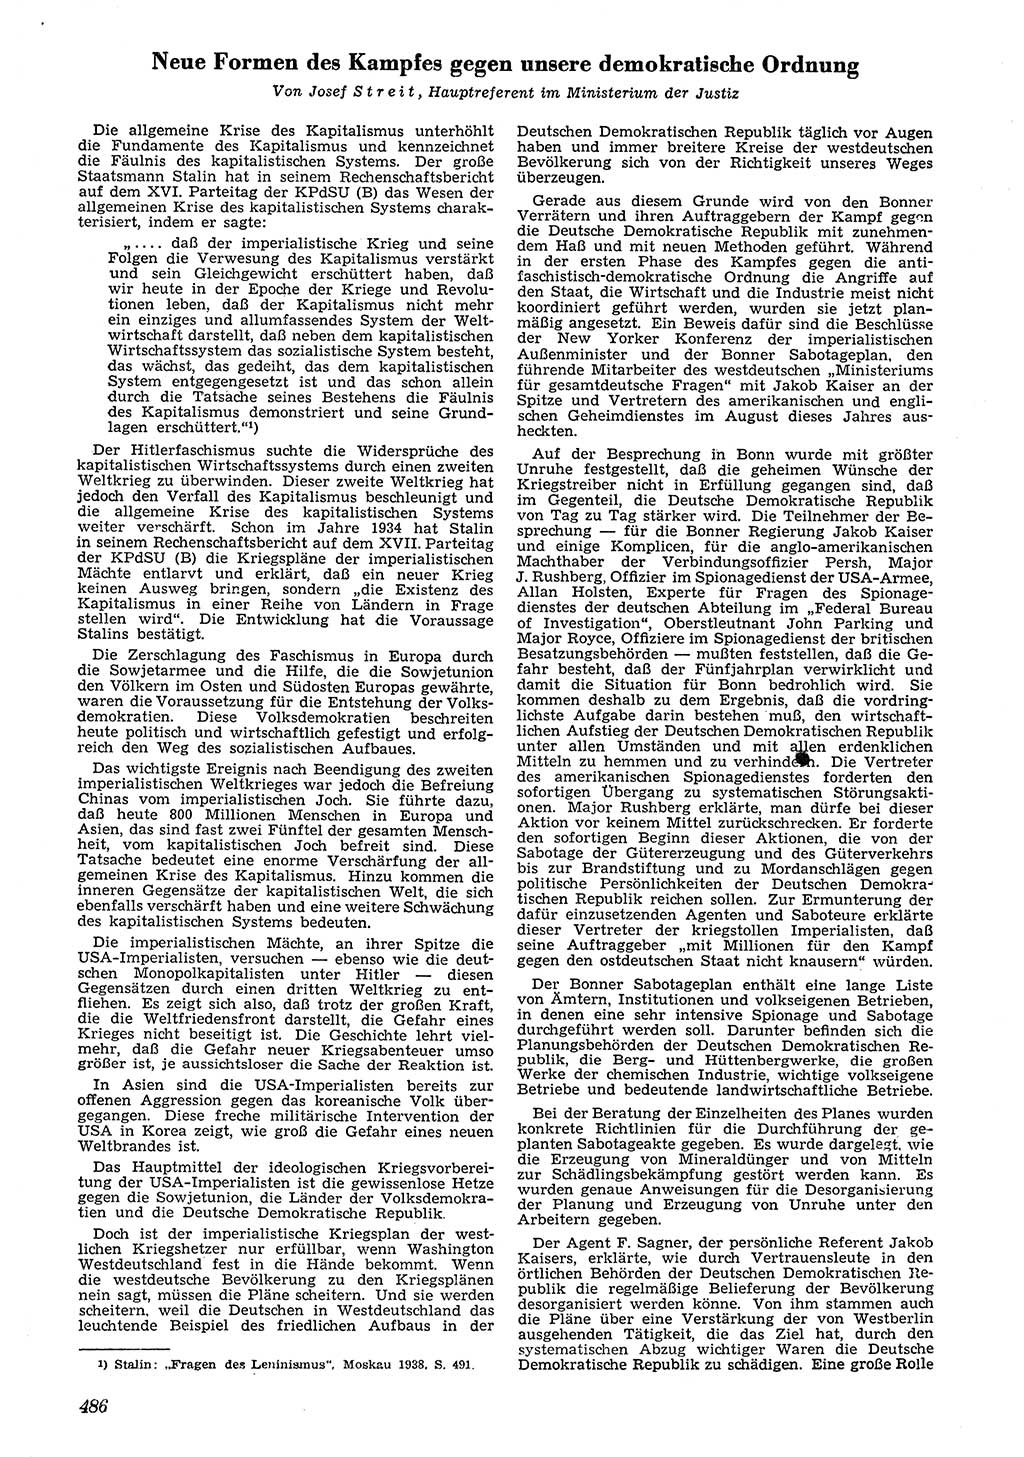 Neue Justiz (NJ), Zeitschrift für Recht und Rechtswissenschaft [Deutsche Demokratische Republik (DDR)], 4. Jahrgang 1950, Seite 486 (NJ DDR 1950, S. 486)